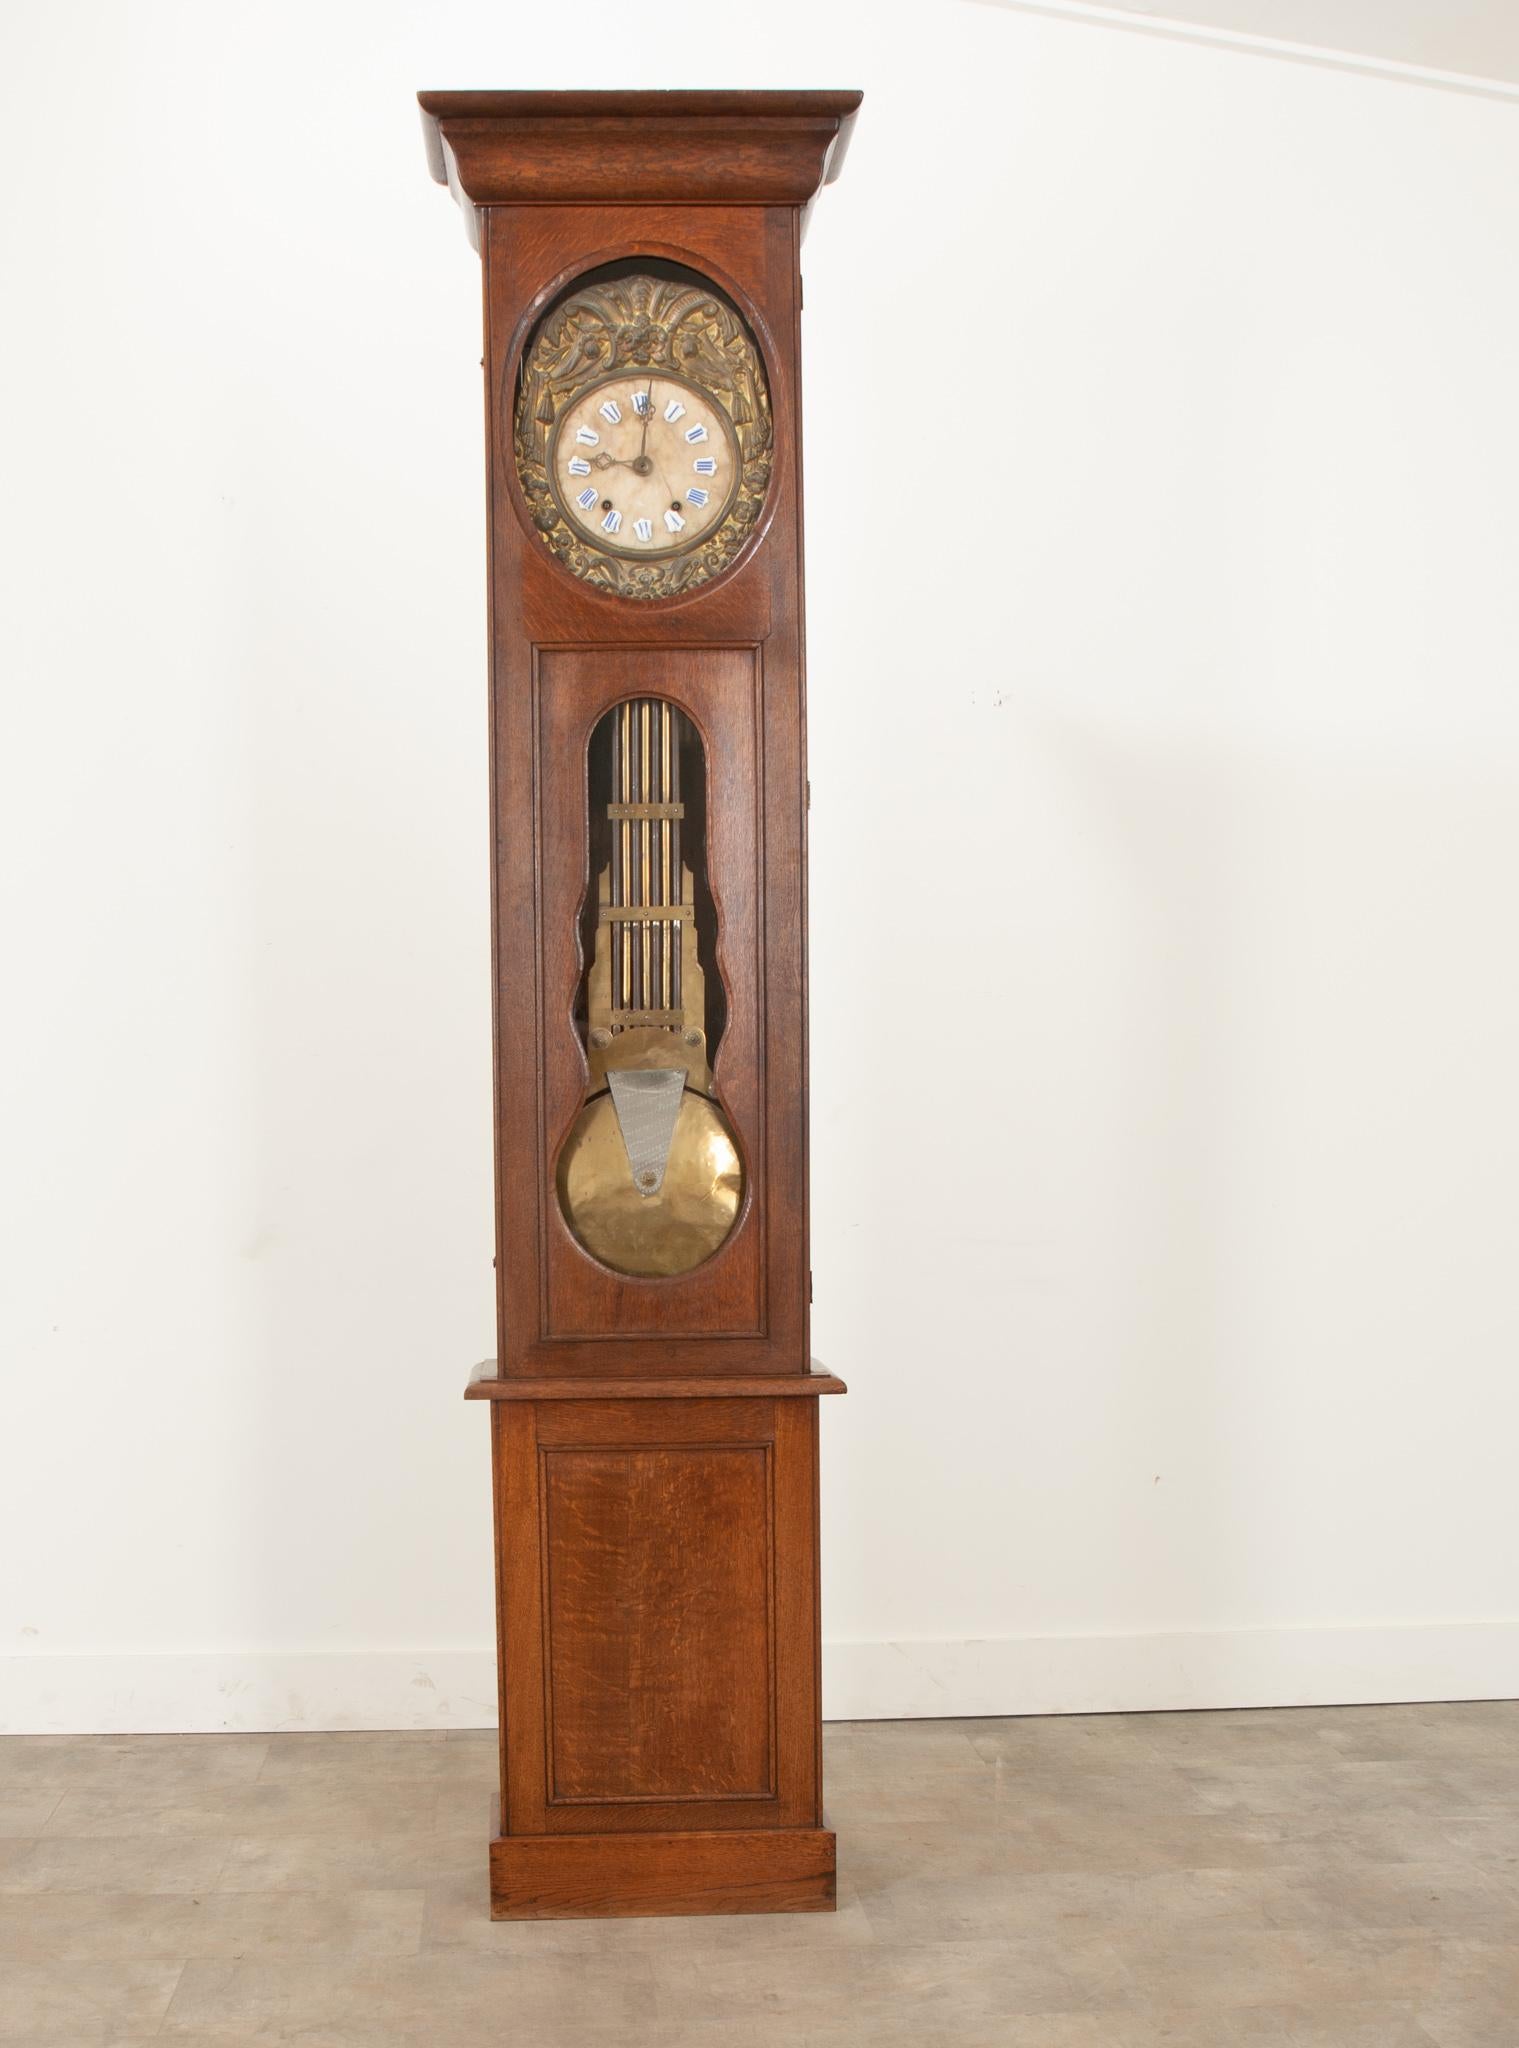 Cette fantastique horloge en chêne massif a été fabriquée en France au cours du 19e siècle. Un bonet finement sculpté au-dessus d'une porte unique avec des vitres permettant de voir le boîtier du cadran et le pendule. Un fronton en laiton repoussé